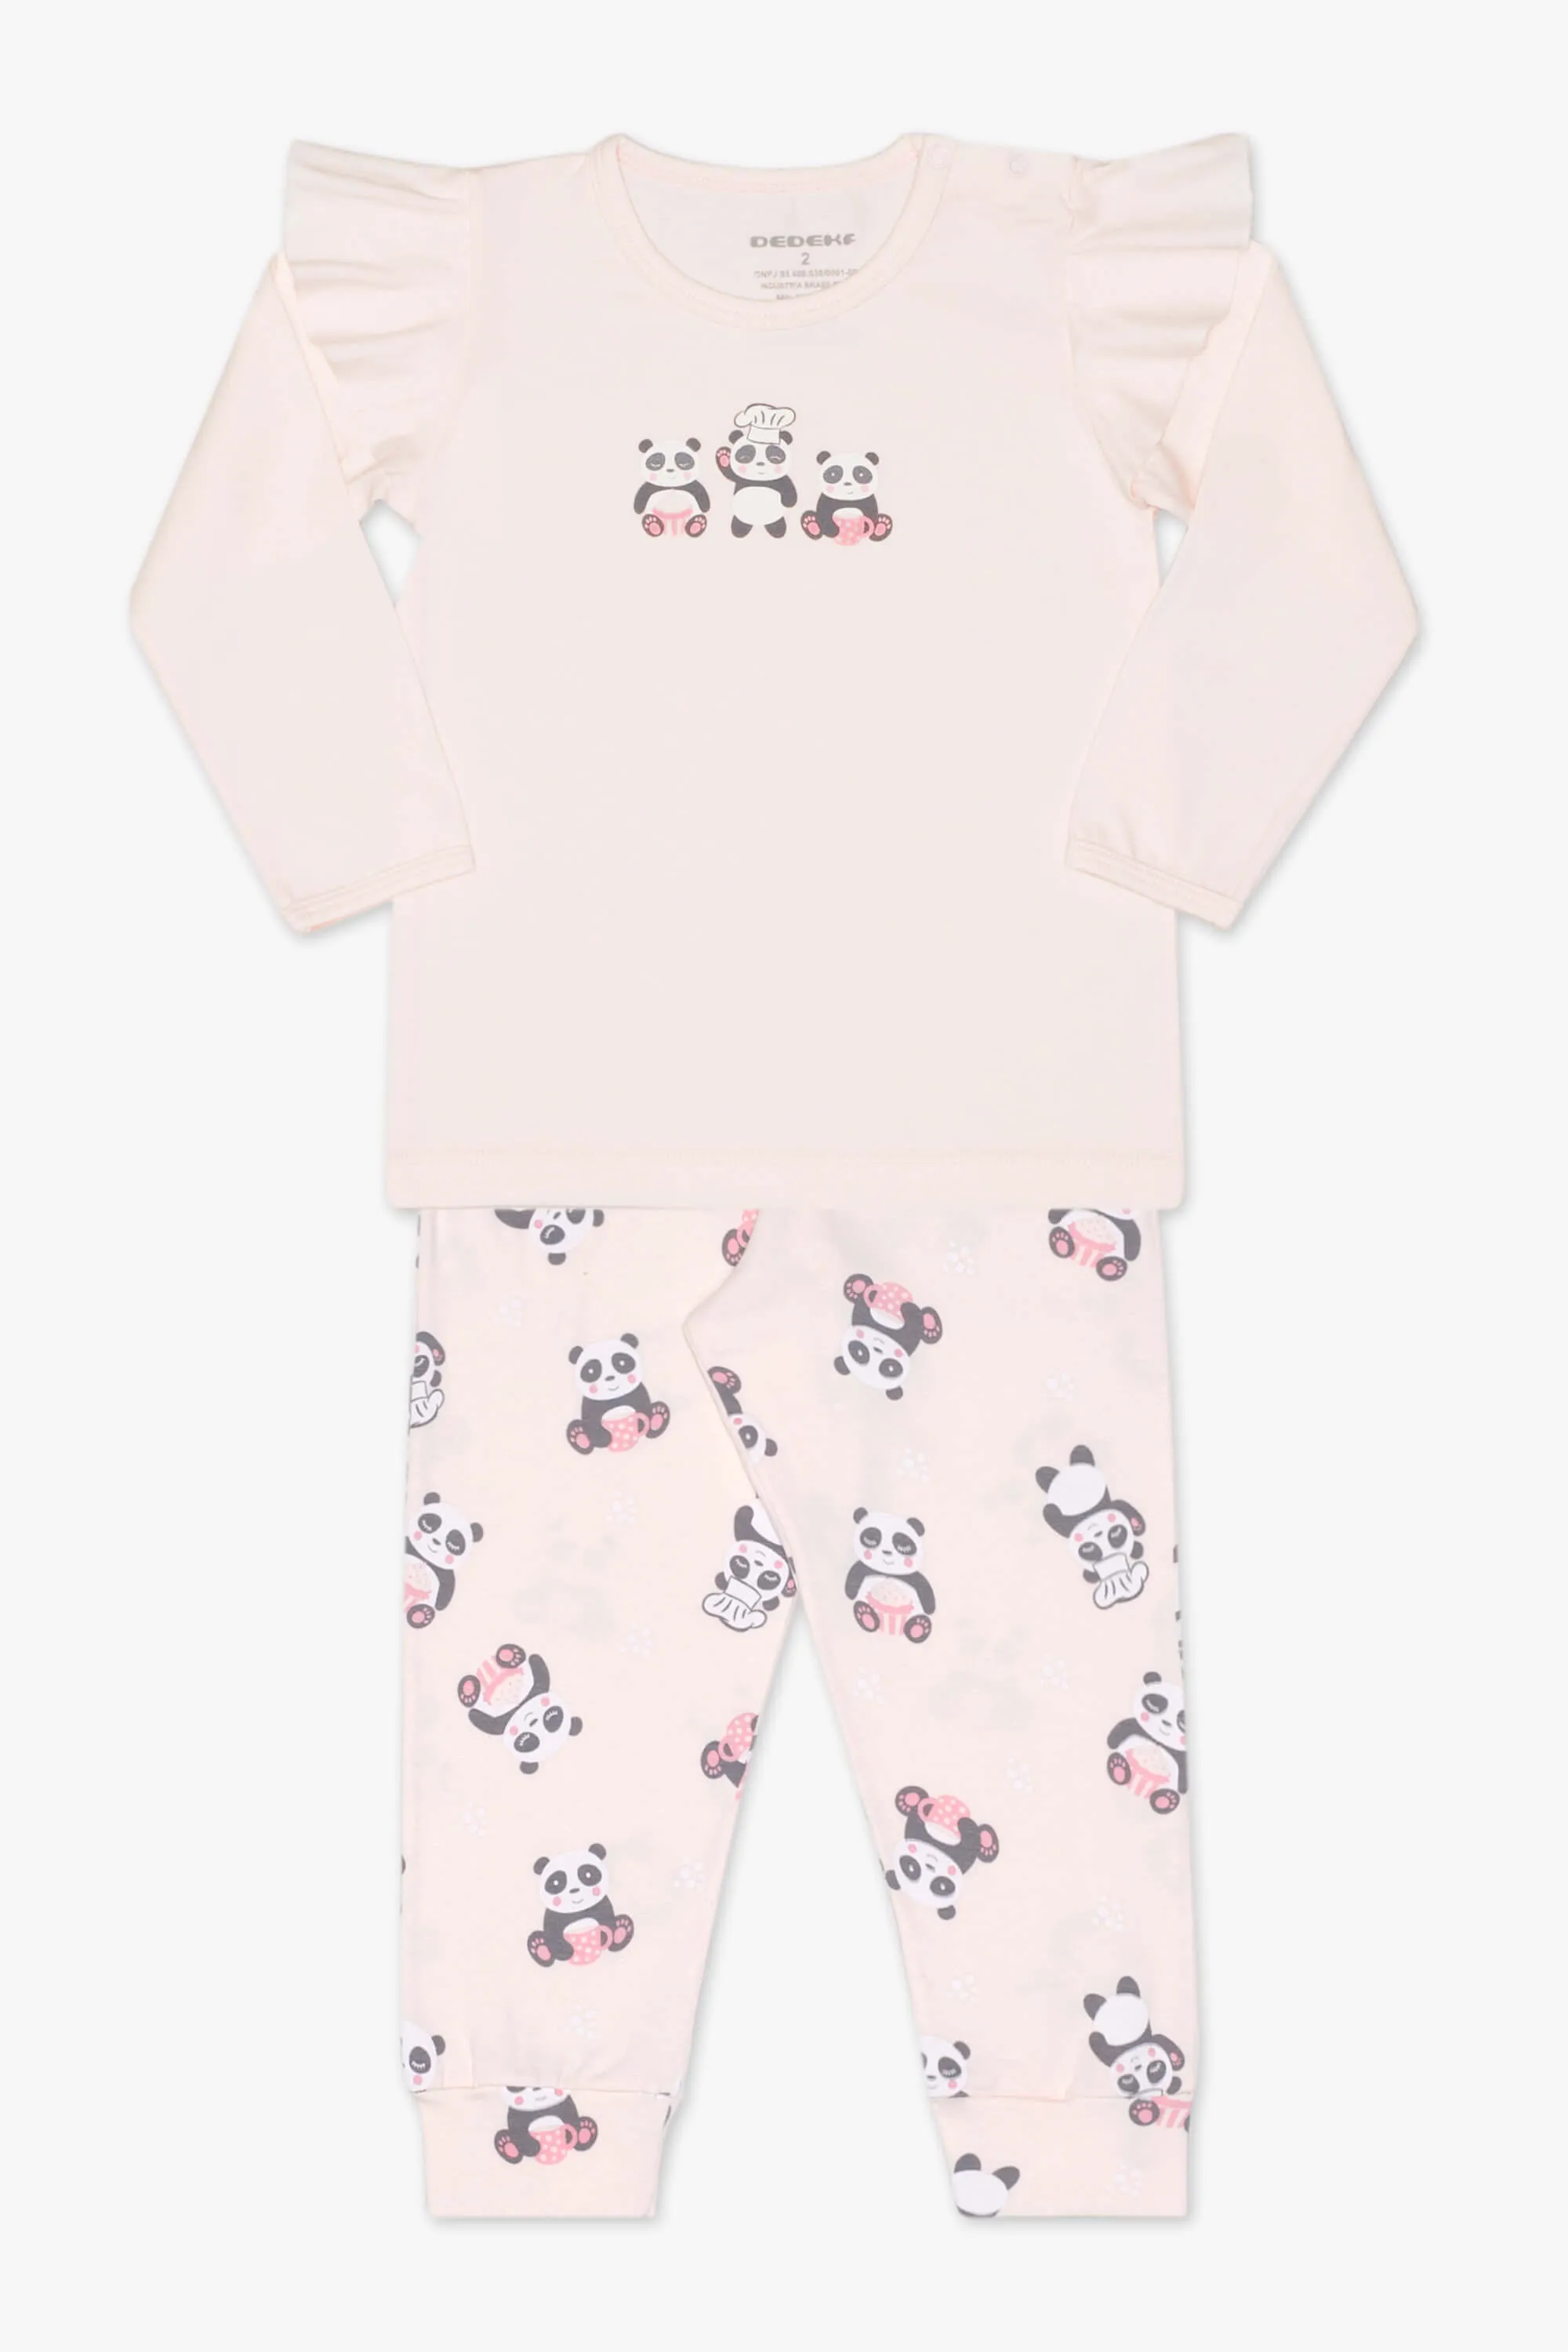 Pijama modal panda rosa T1 24682 Dedeka